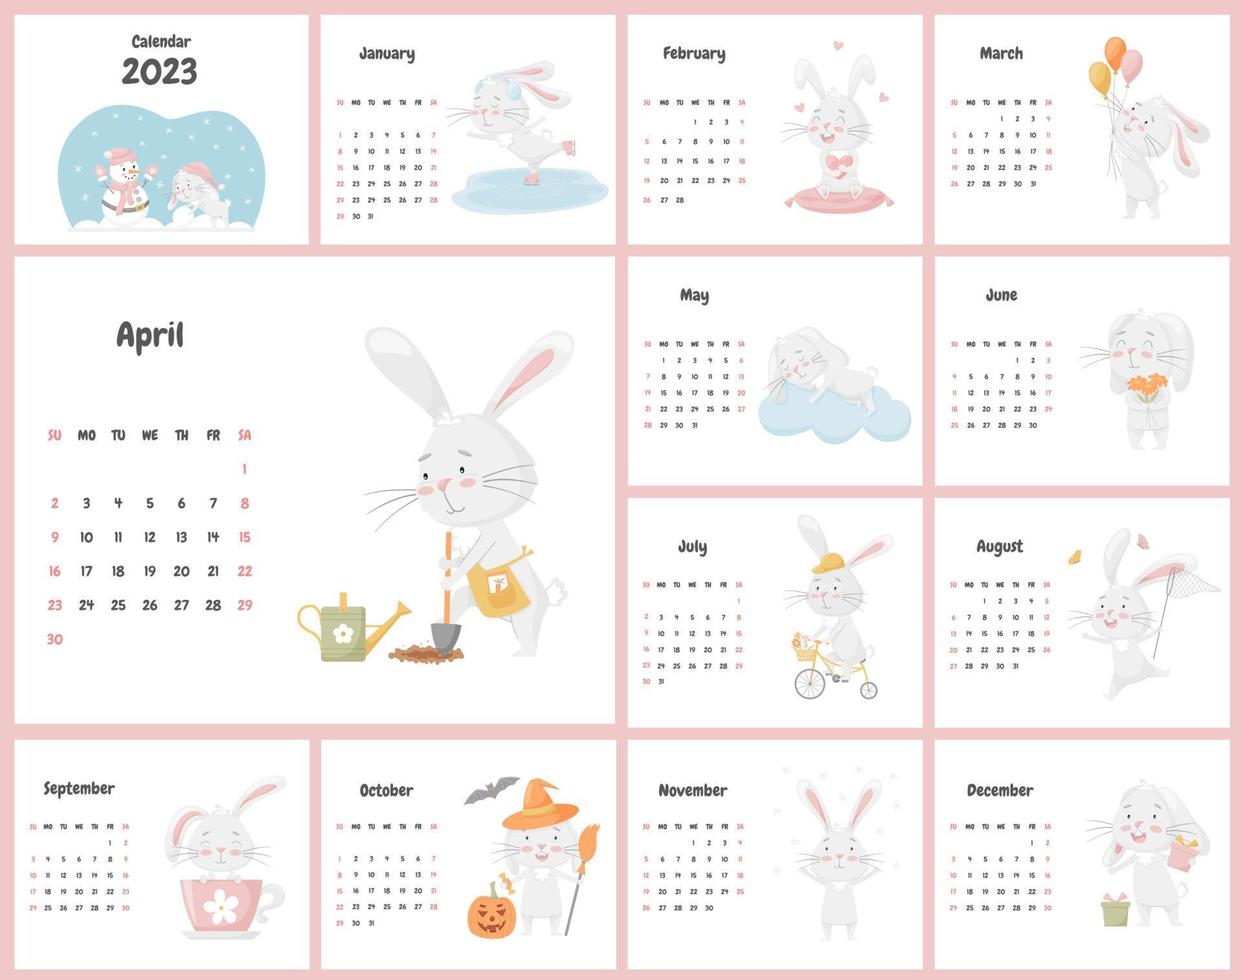 todas as páginas do calendário para 2023 com um personagem de coelho fofo, o símbolo chinês do ano. um conjunto de ilustrações com um personagem infantil em tons pastel. vetor em um fundo branco.